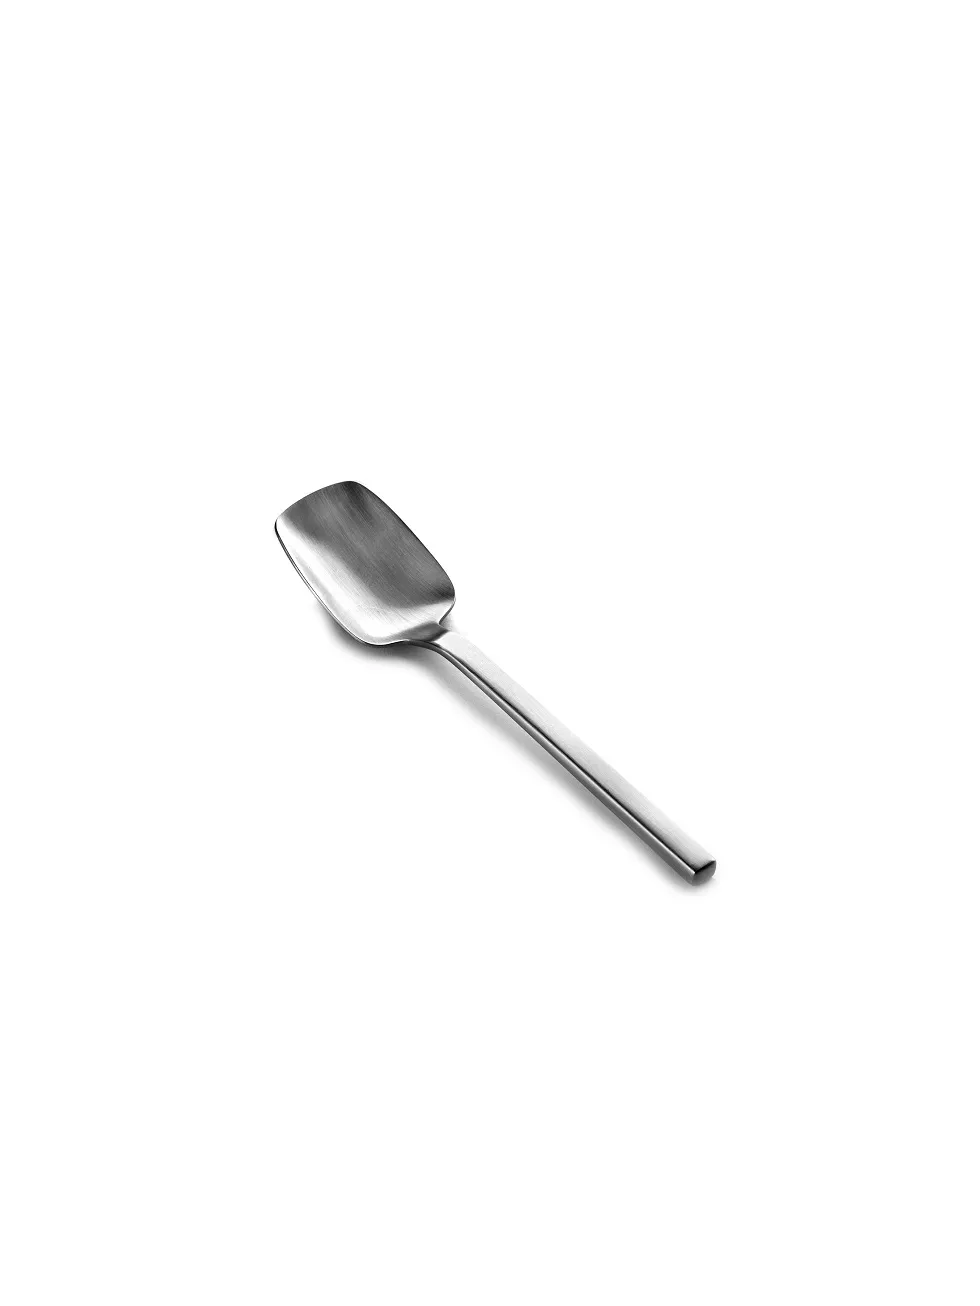 Espresso Spoon Collezione Heii by Serax